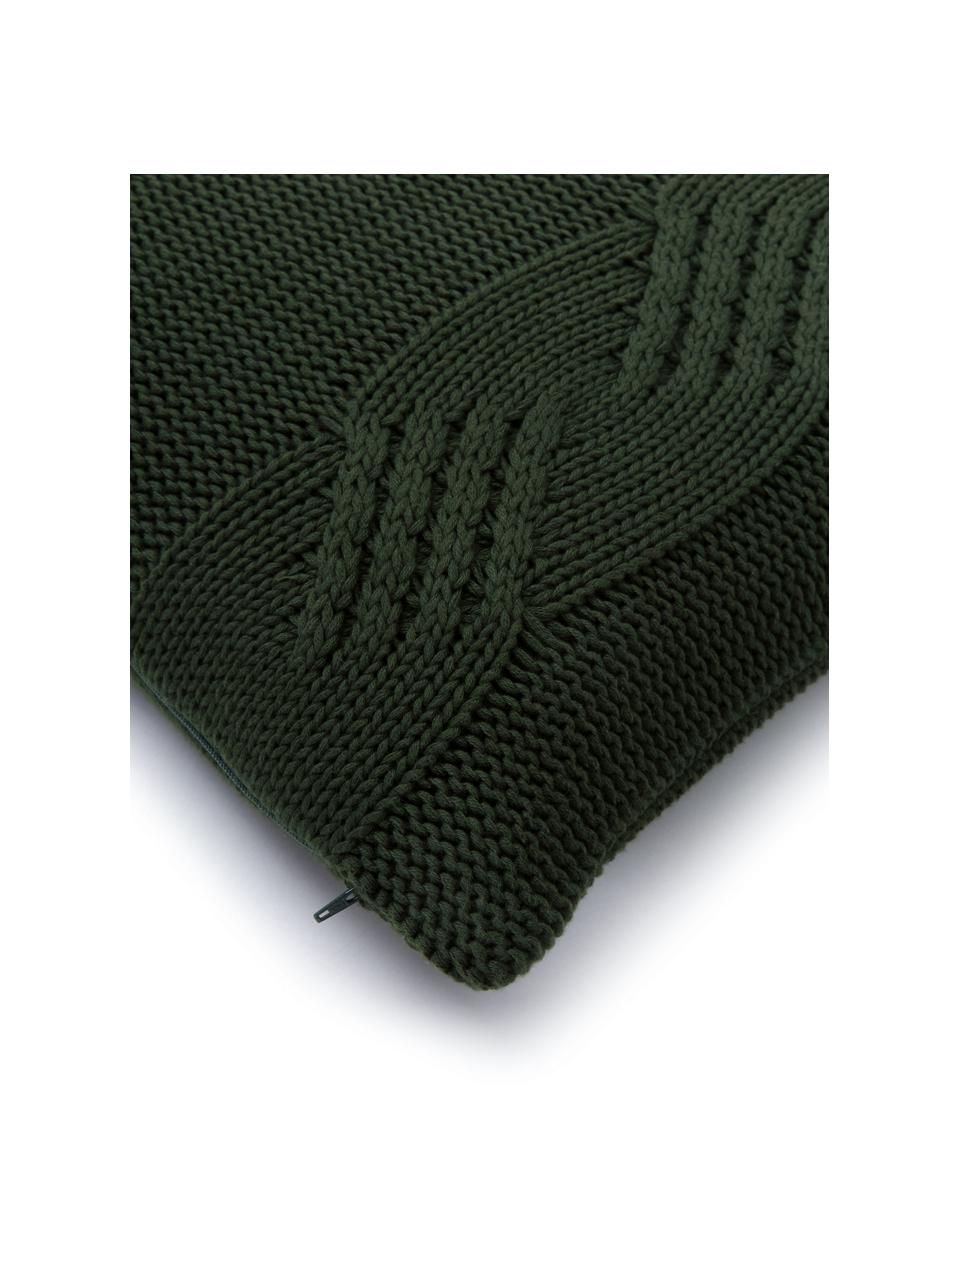 Federa arredo fatta a maglia con motivo a rilievo Jonah, 100% cotone, Verde scuro, Larg. 40 x Lung. 40 cm